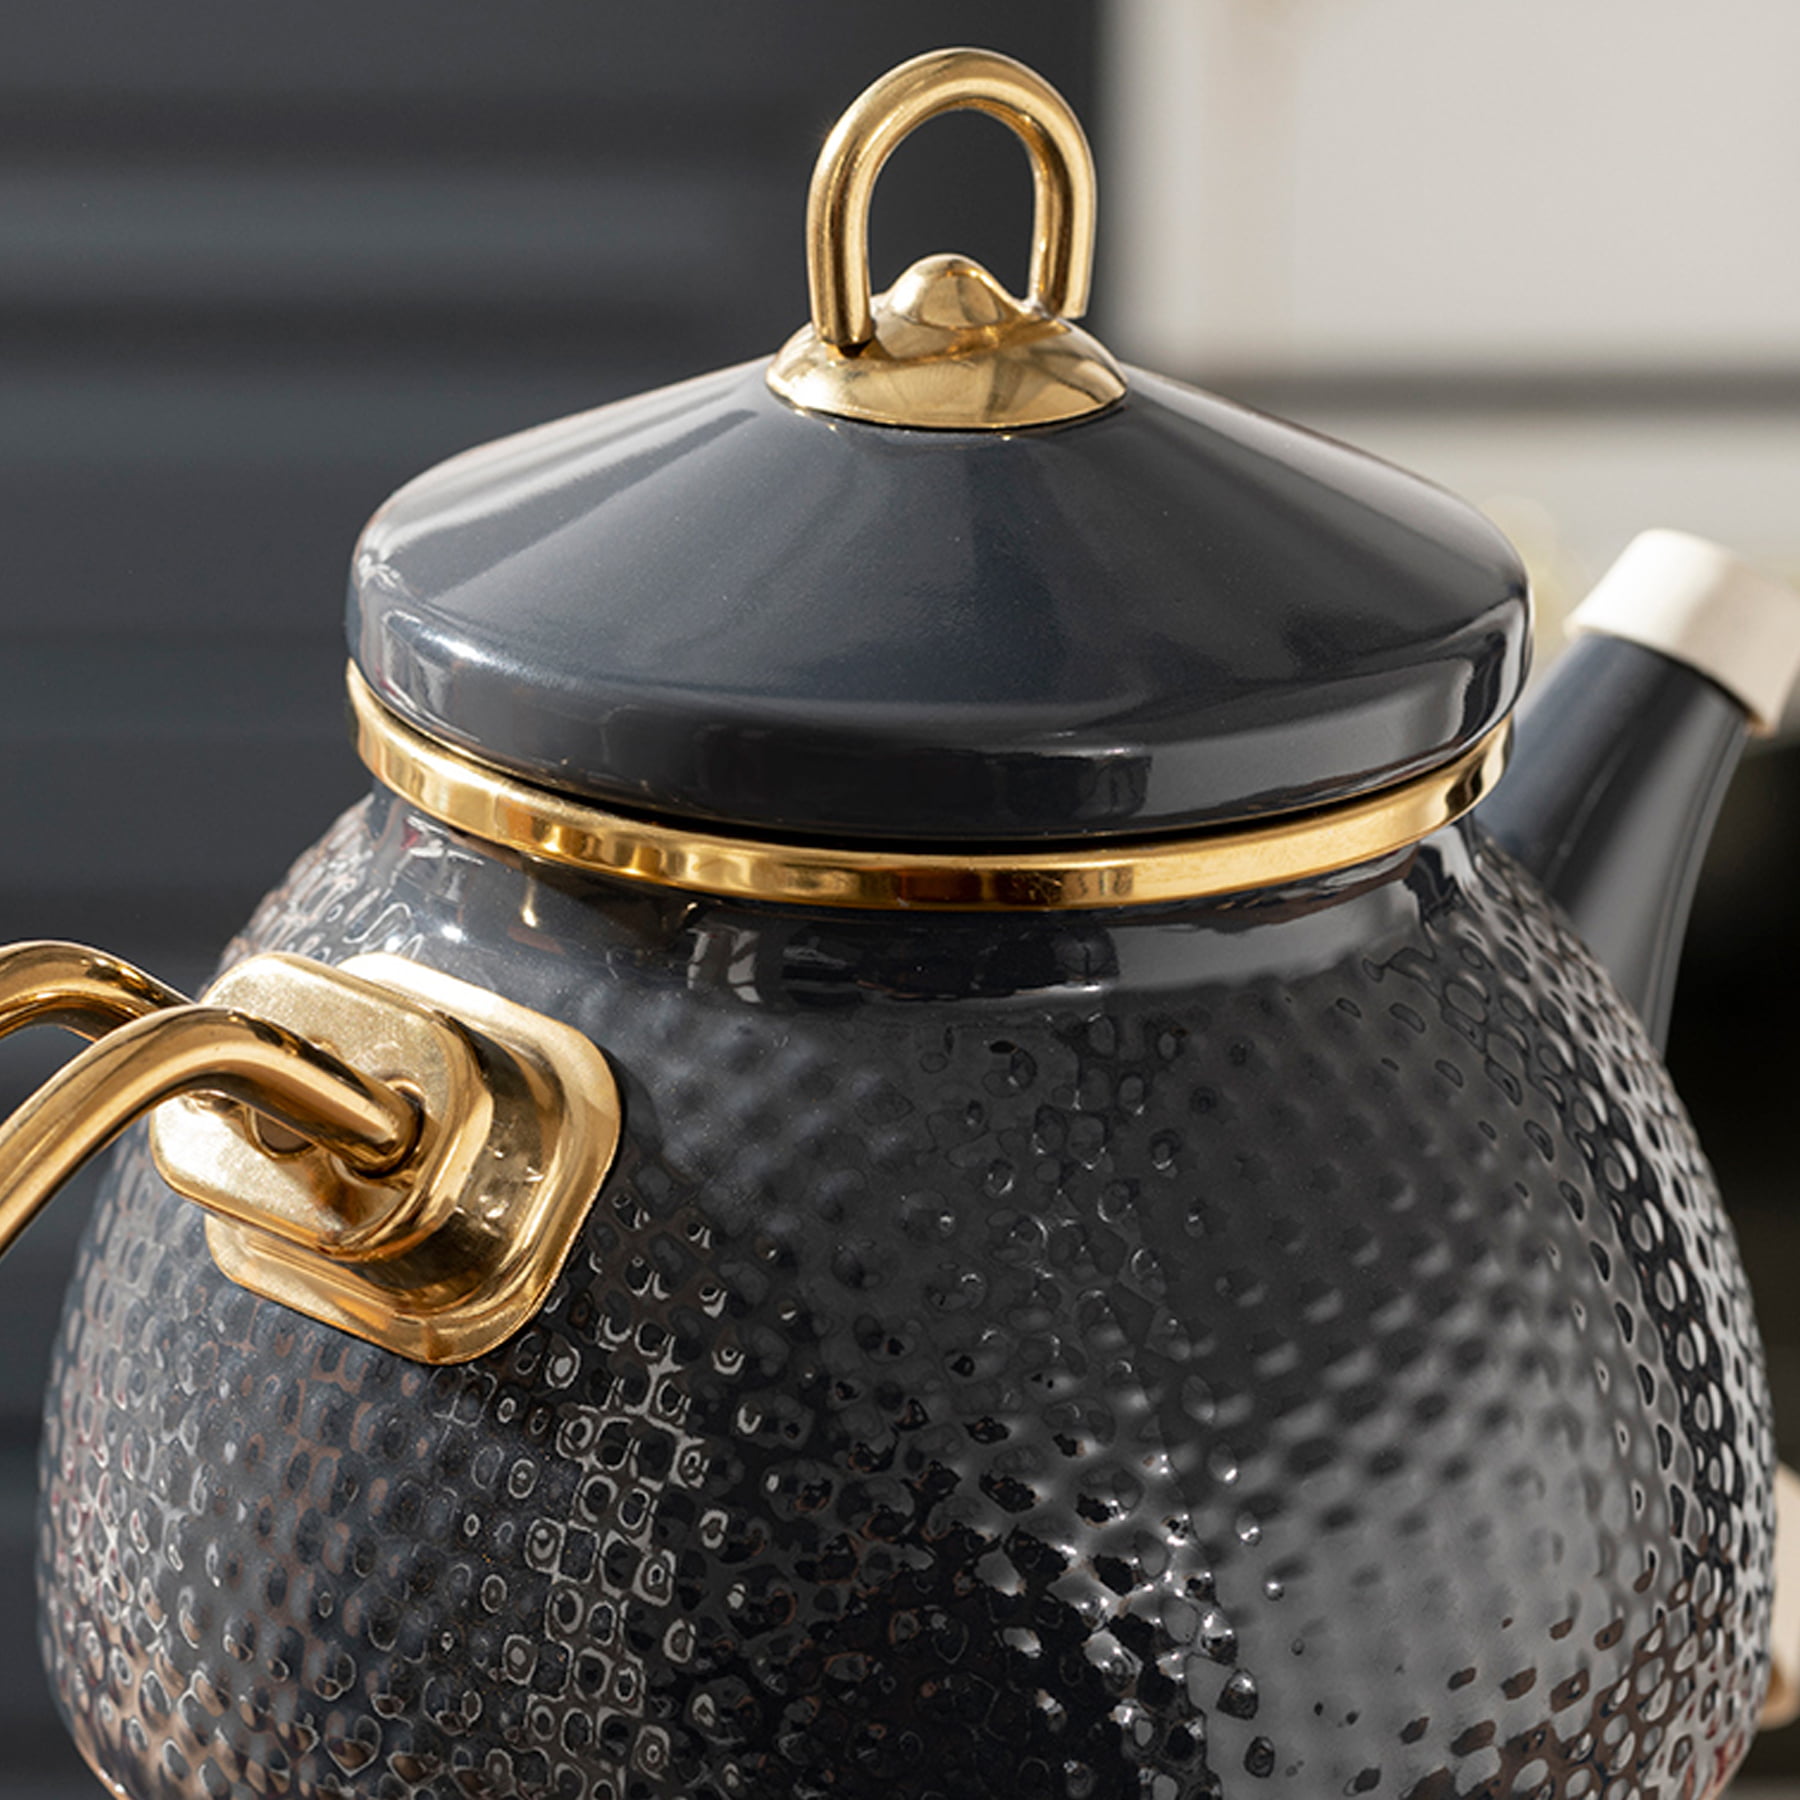 https://traditionalturk.com/wp-content/uploads/2021/12/anthracite-color-ceremony-enamel-turkish-tea-pot-kettle-2.jpg